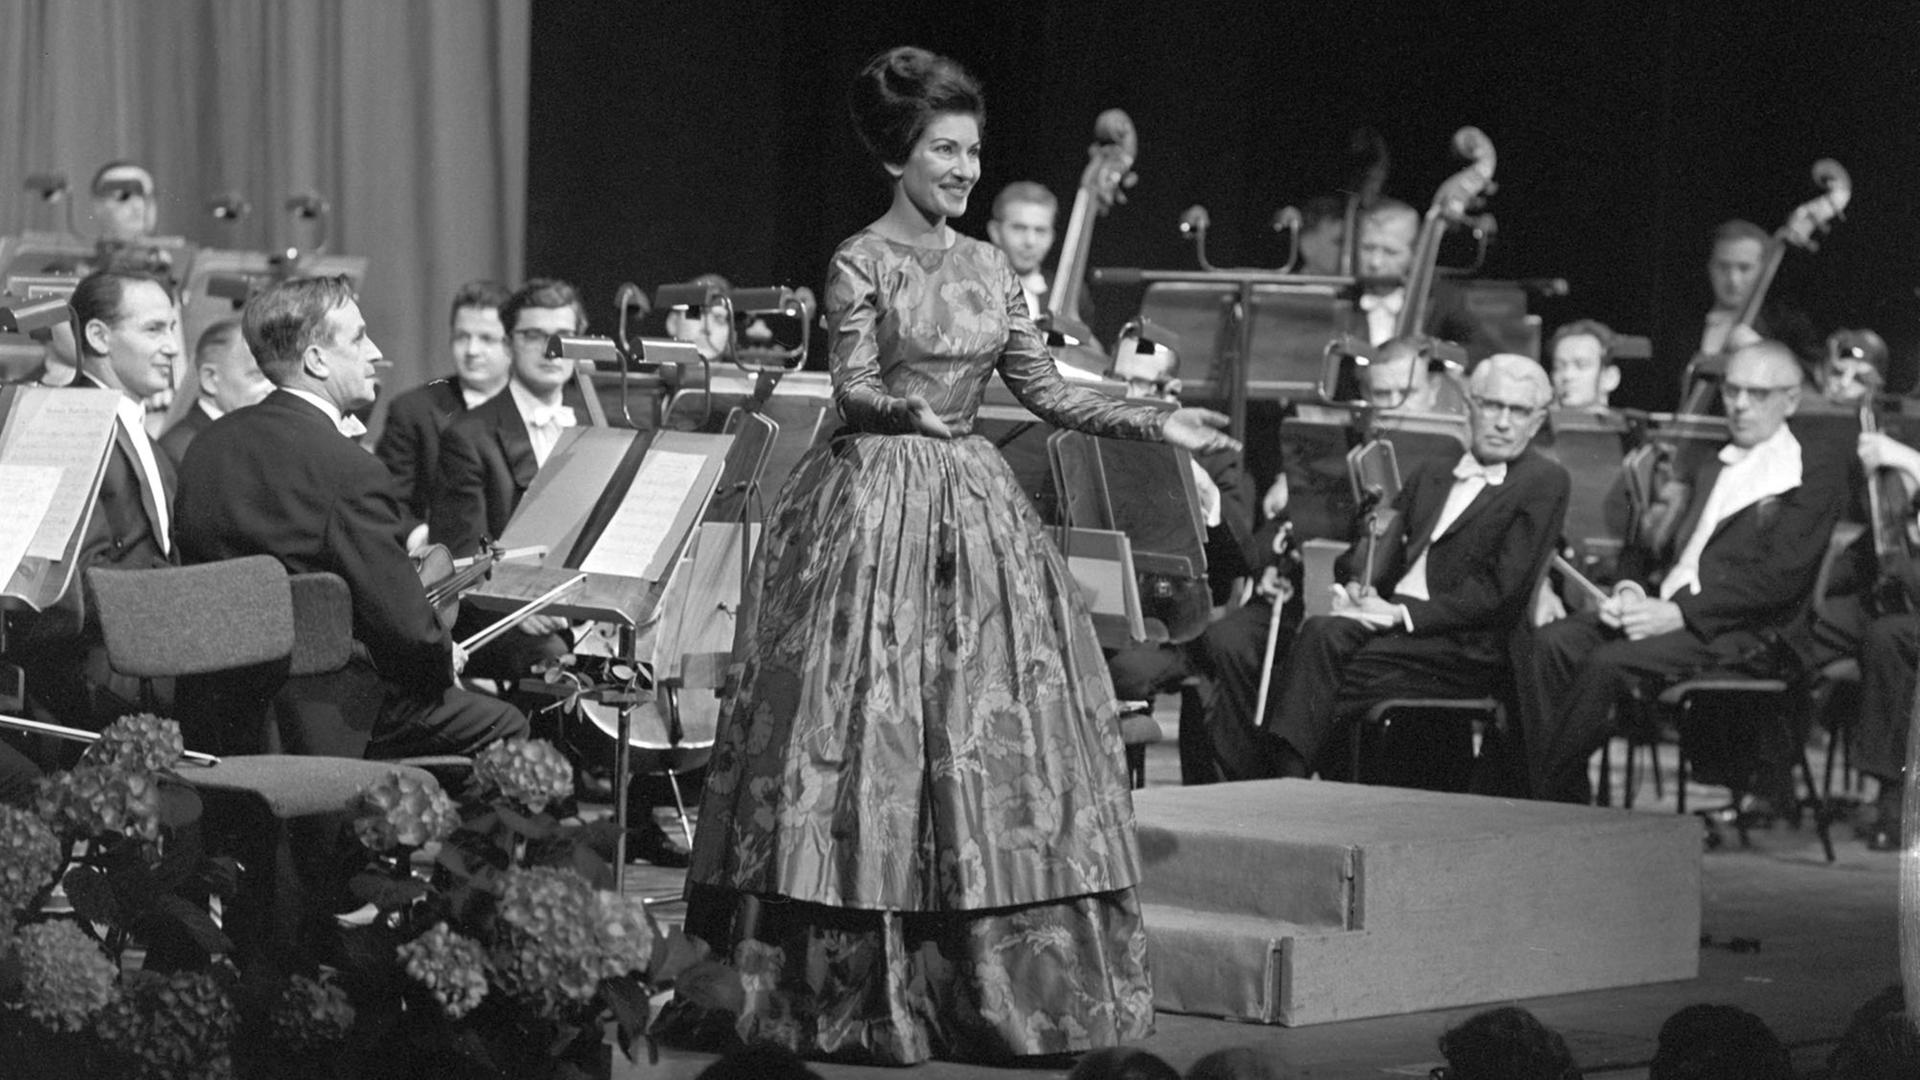 Das Bild vom 18.05.1963 zeigt Maria Callas während des Schlussapplauses nach dem Gala-Konzert in der Deutschen Oper Berlin